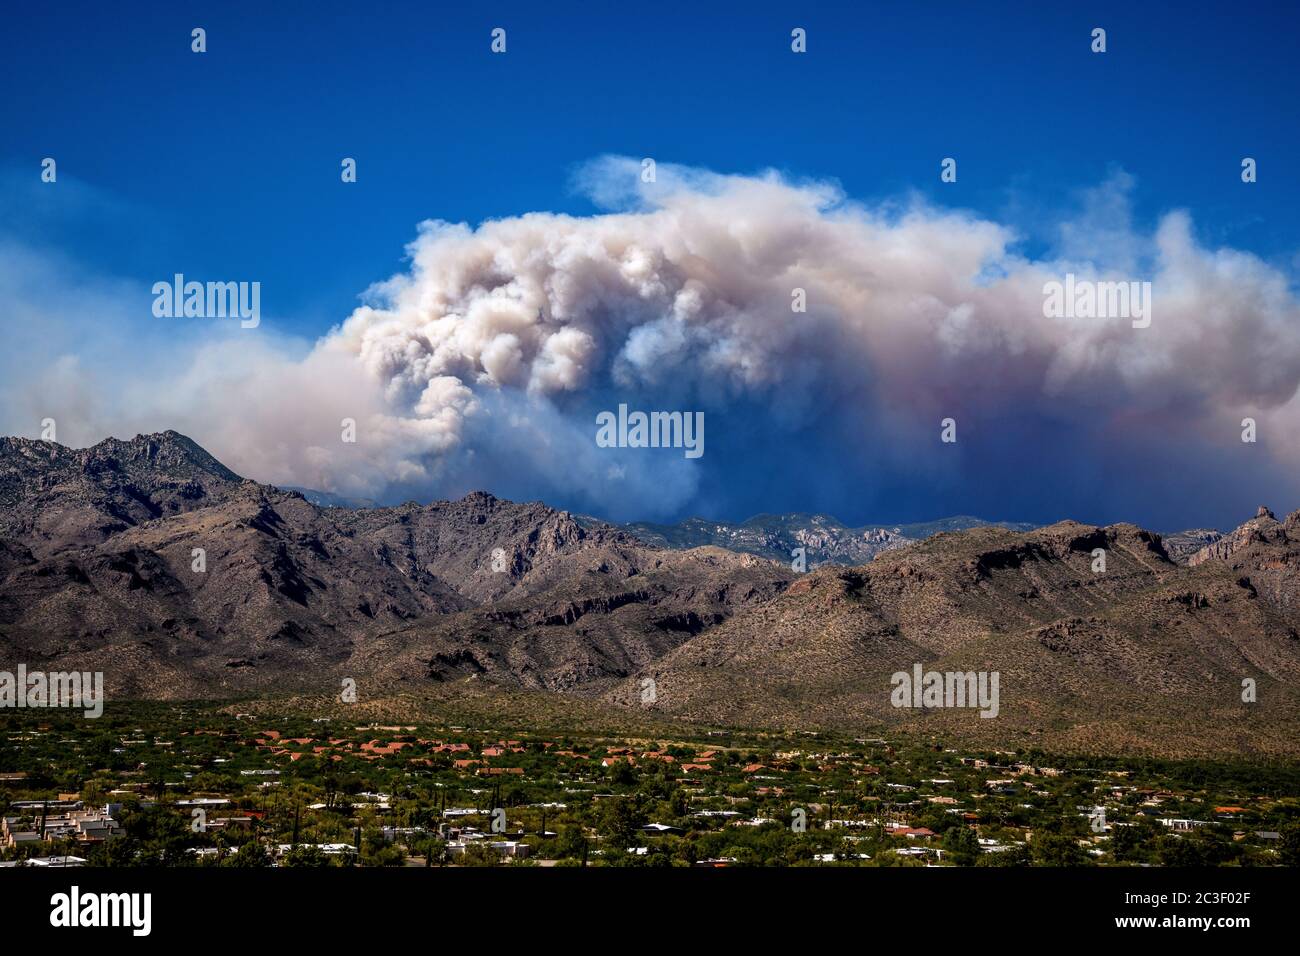 Rauch vom Bighorn Feuer, der in den Santa Catalina Bergen brennt, ragt über Sabino Canyon, Sonoran Wüste, Coronado National Forest, Tucson, Ariz Stockfoto